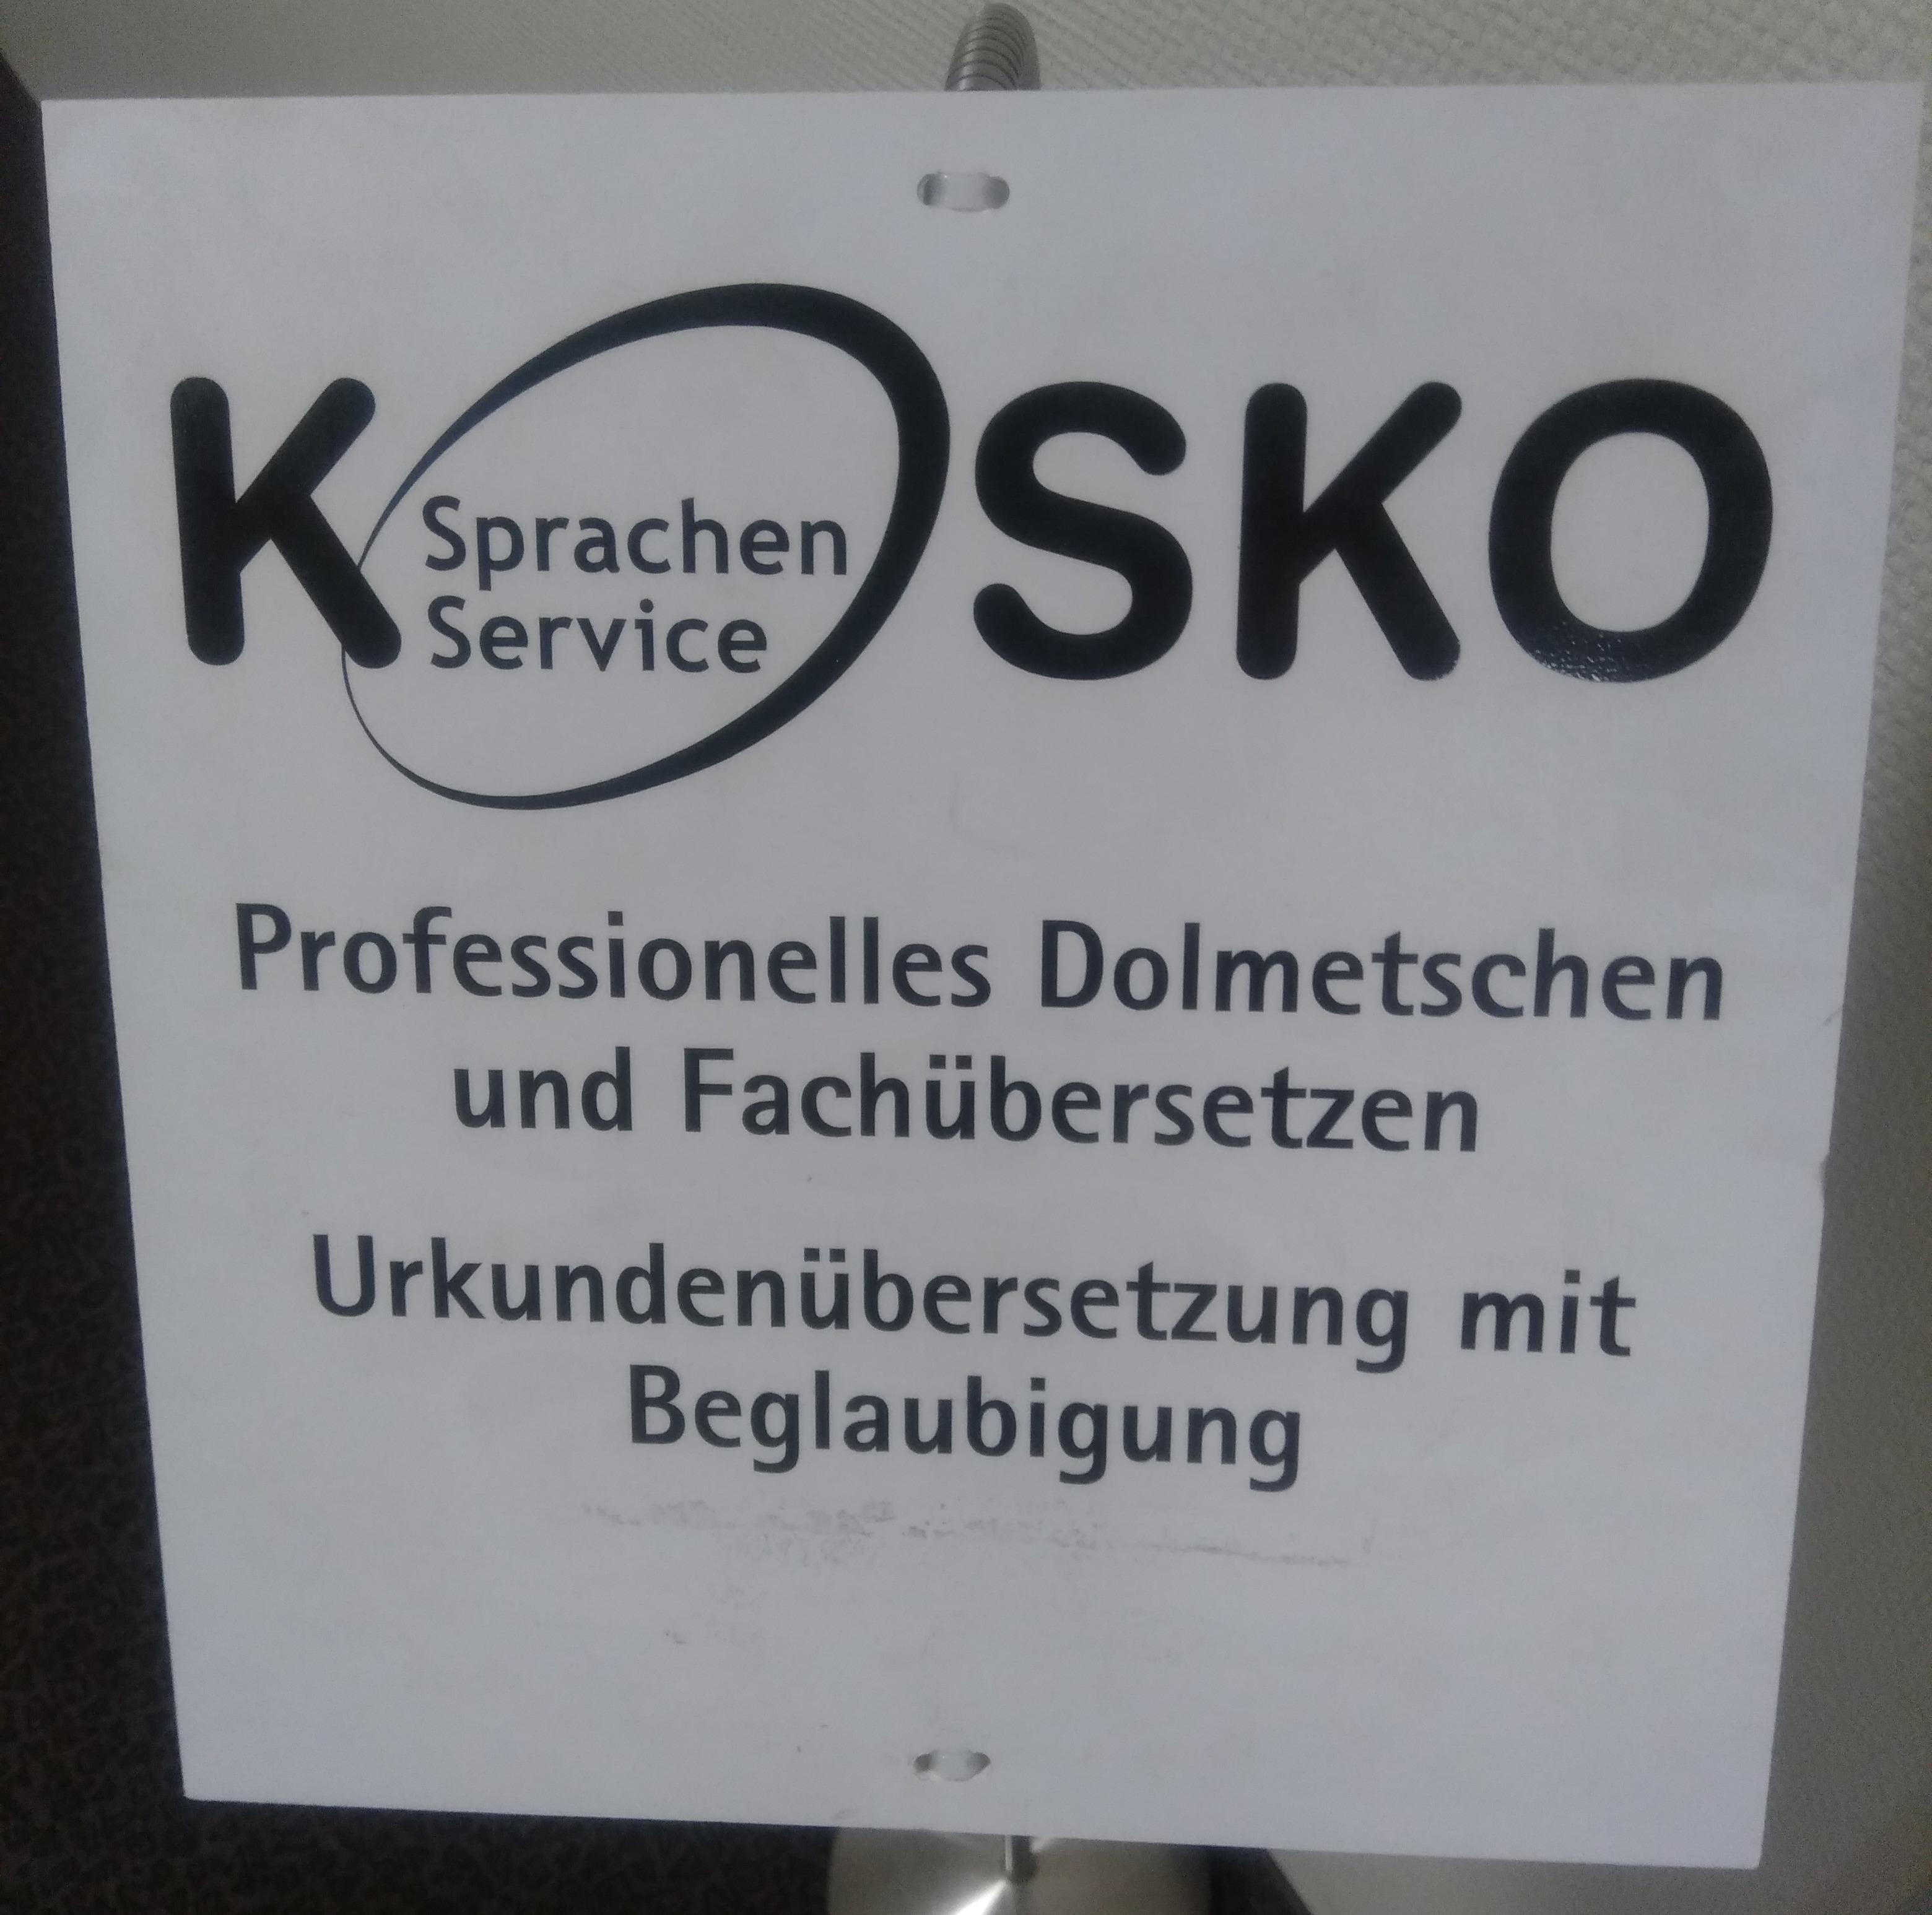 Kosko Sprachenservice, Leipziger Straße 91 in Halle (Saale)